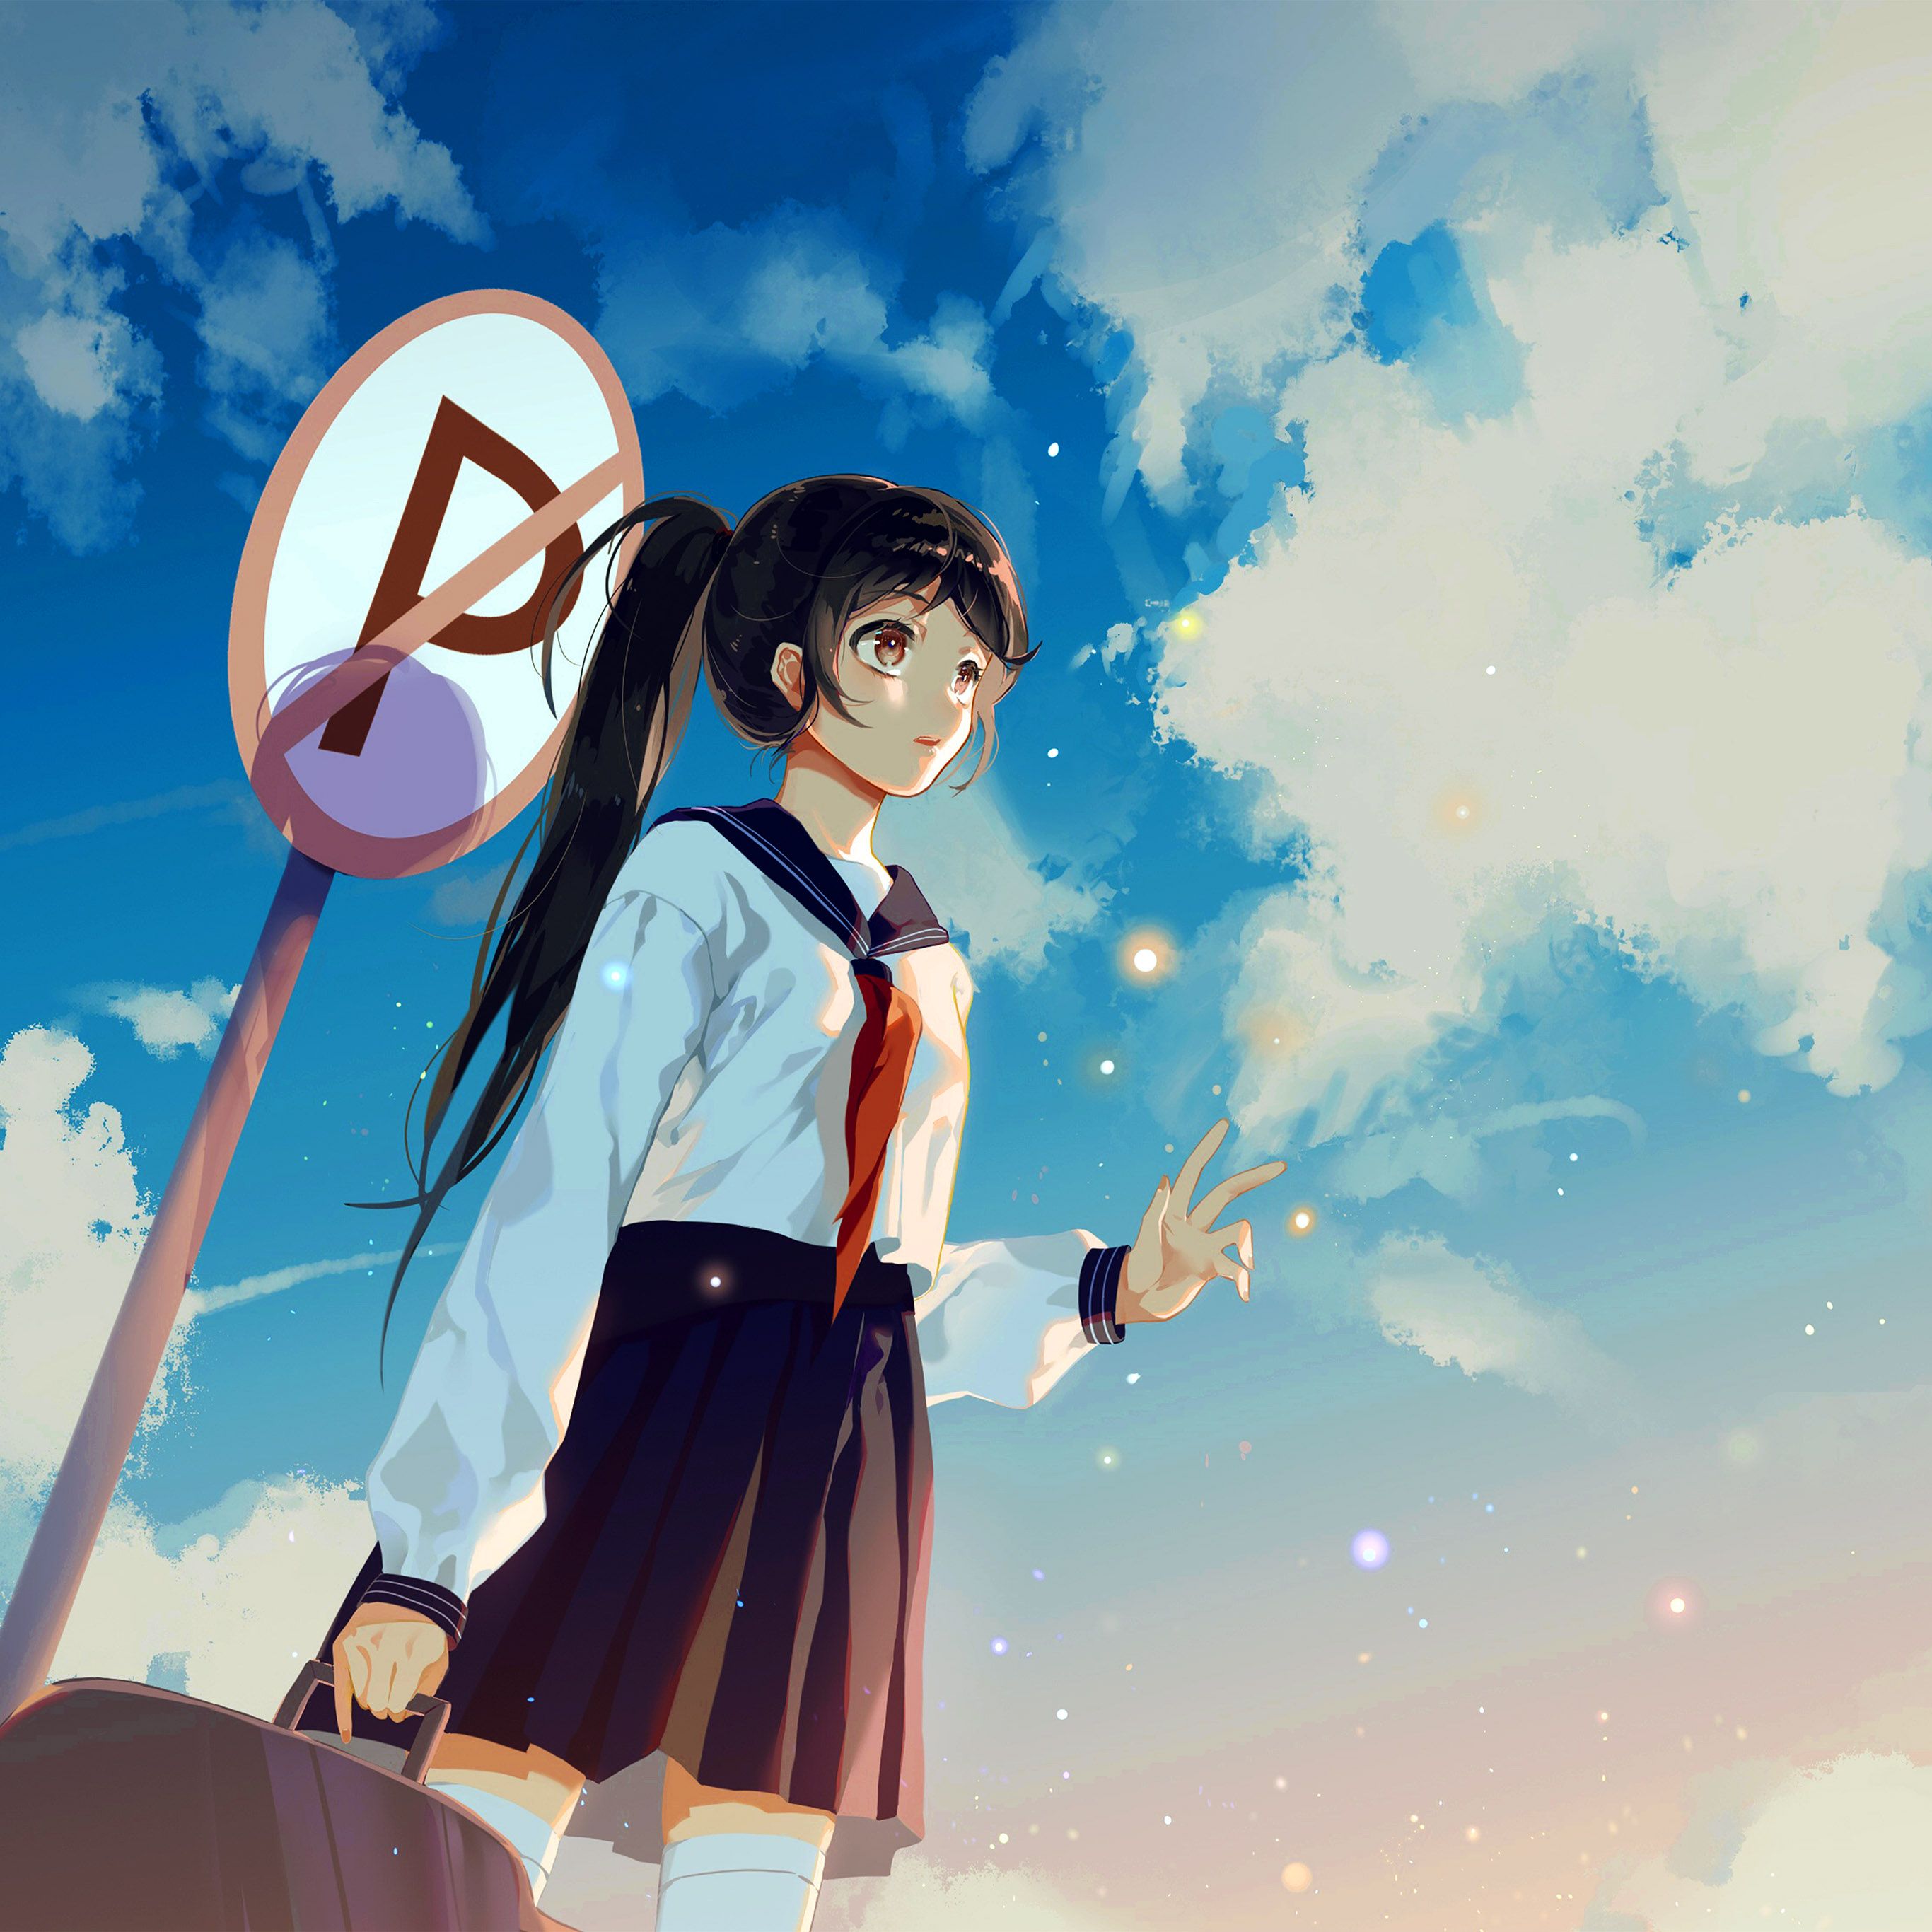 Girl School Girl Anime Sky Cloud Star Art Illustration Wallpaper